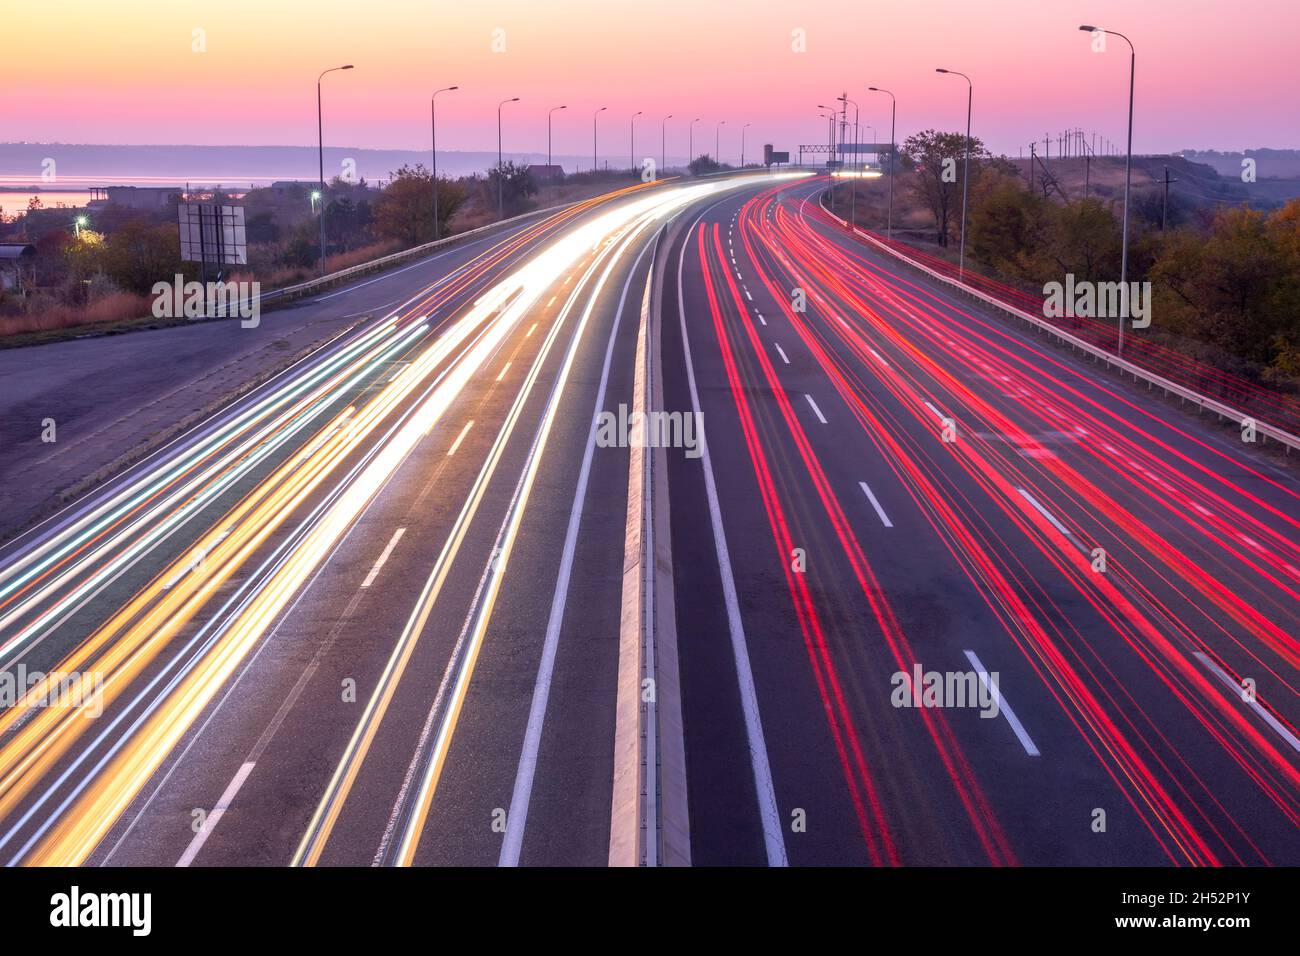 Vorstadtautobahn am Abend nach Sonnenuntergang. Spuren von Scheinwerfern und Schlussleuchten bei starkem Verkehr Stockfoto